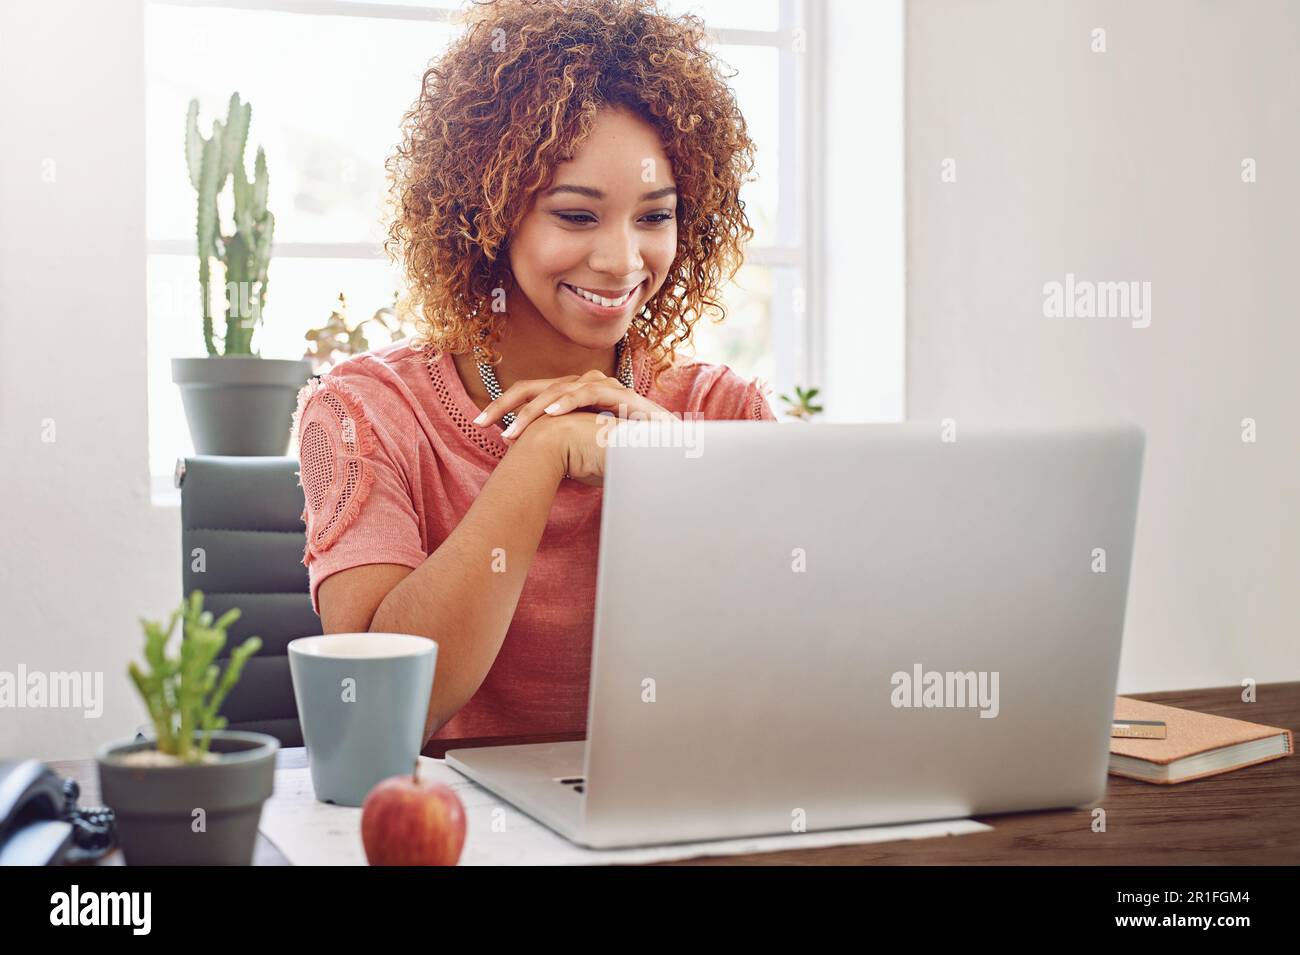 Frau, Geschäftsstudent und lächelt auf Laptop für Planung, Technologie und Internet in einer Startup-Agentur. Glückliche afrikanische Mitarbeiterin, Praktikantin und Stockfoto